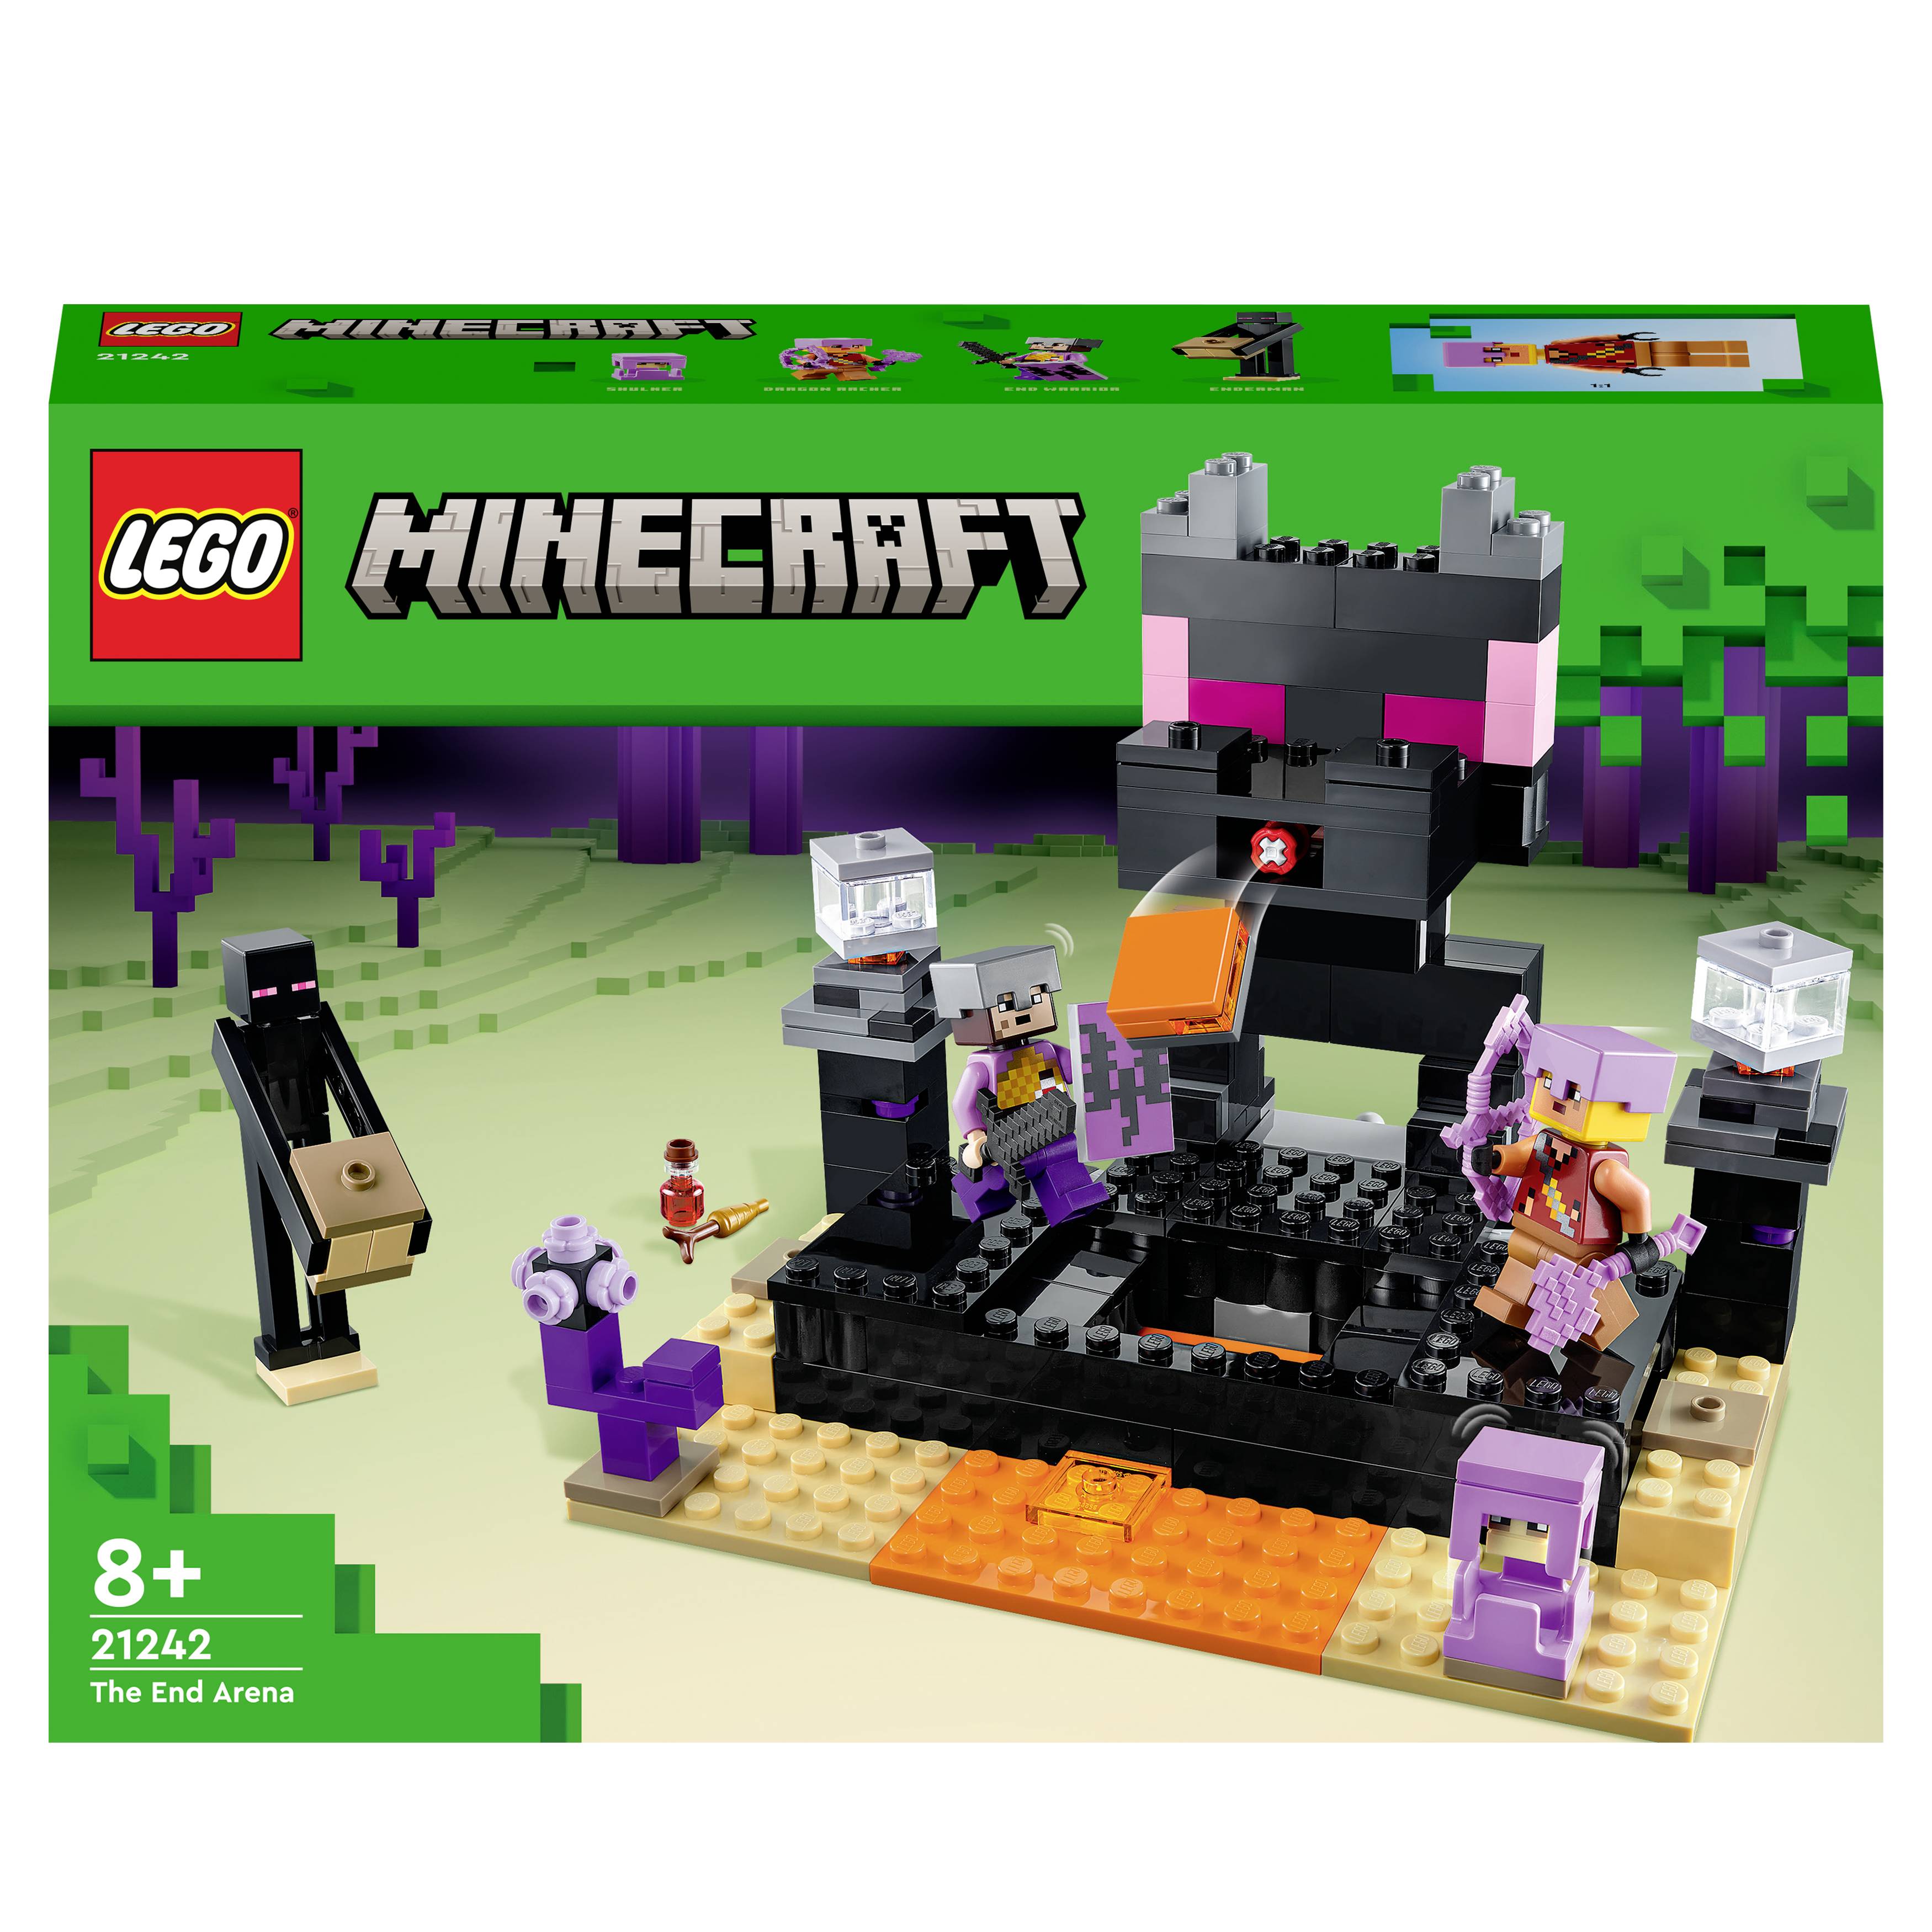 21242 LEGO® MINECRAFT The End Arena | Conrad.com